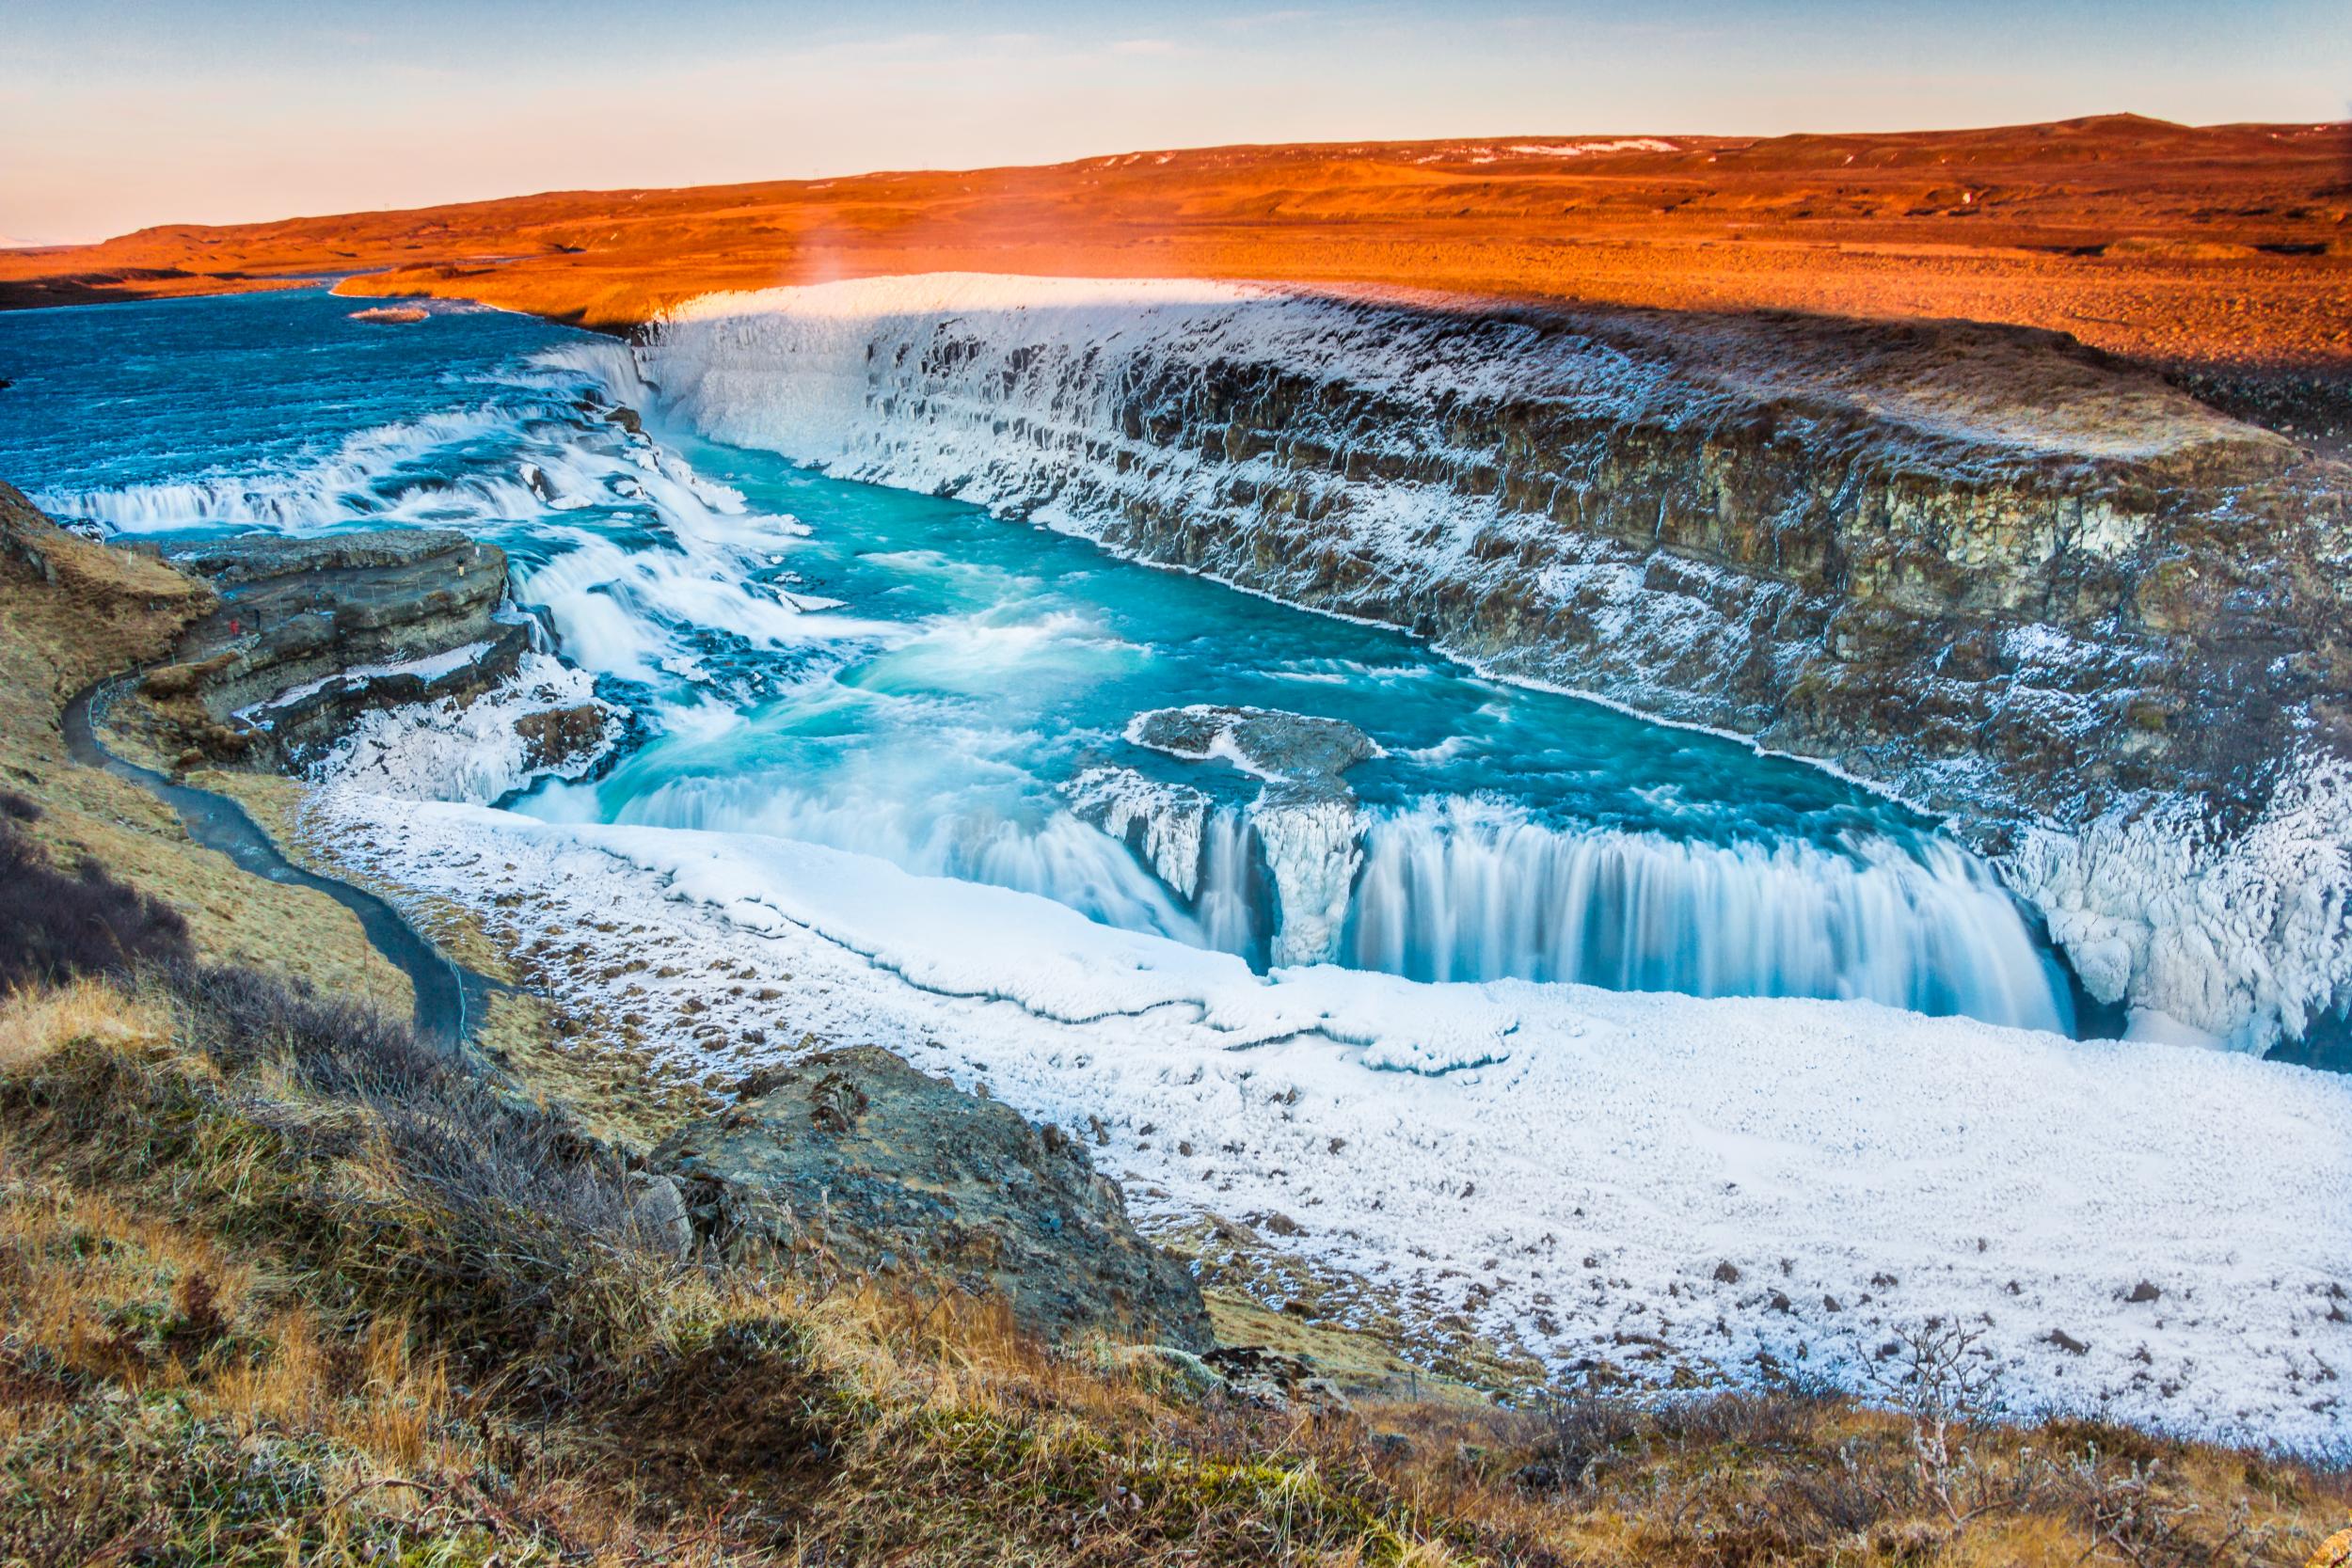 Iceland's amazing winter landscape